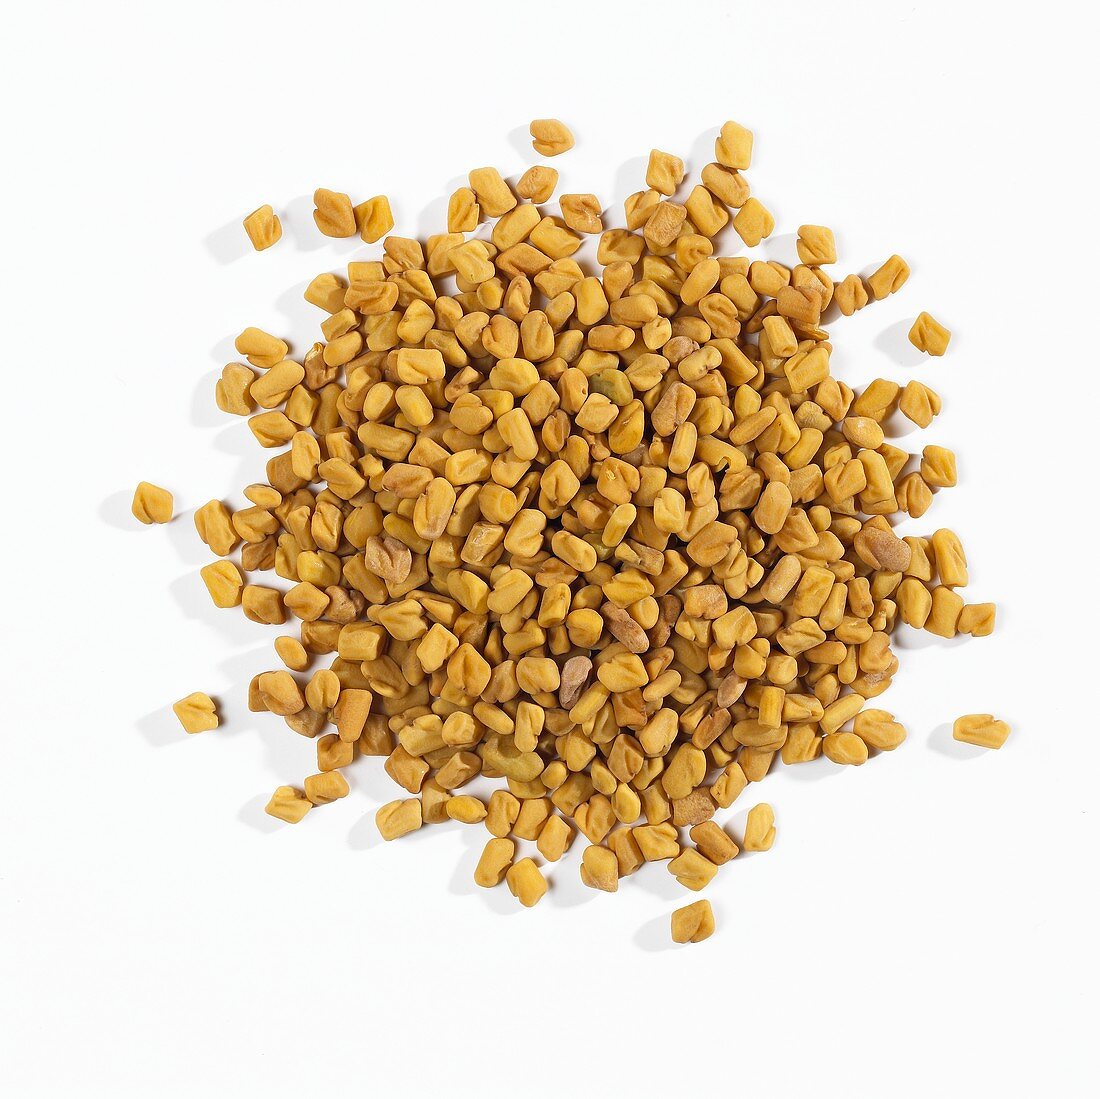 A heap of fenugreek seeds